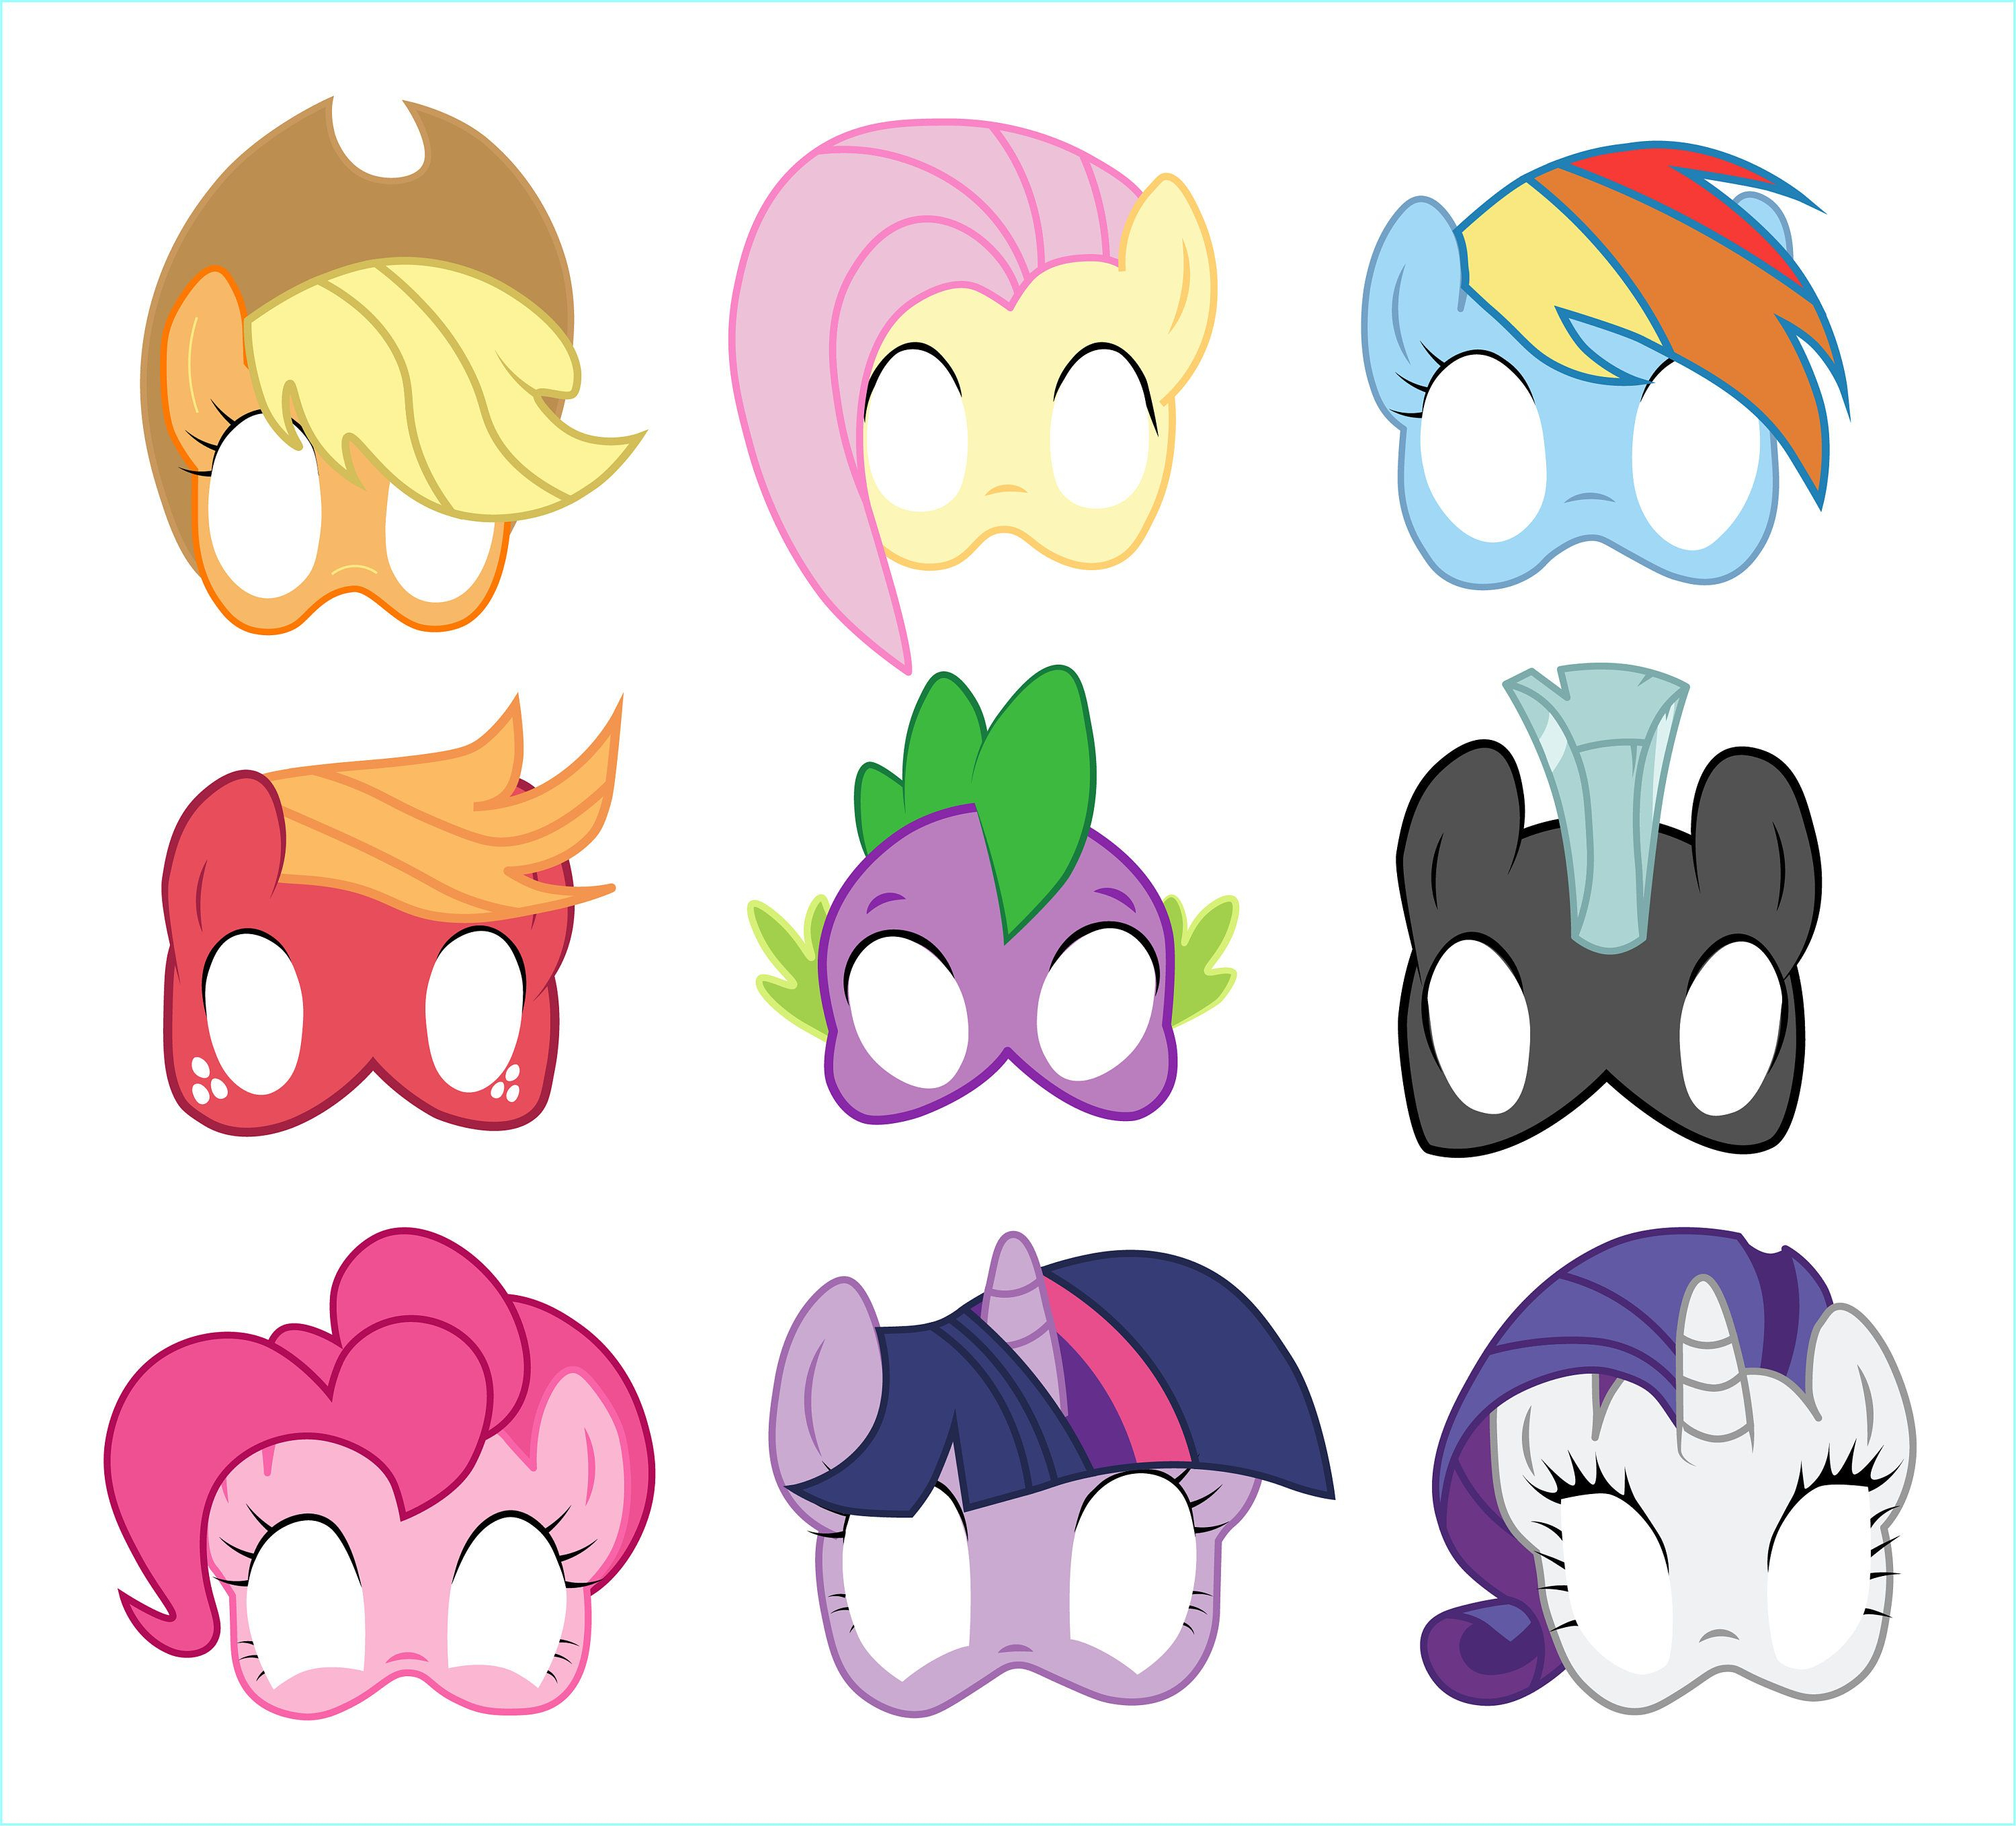 Pinsarah Reddehase On My Little Pony | My Little Pony Birthday - Free My Little Pony Printable Masks